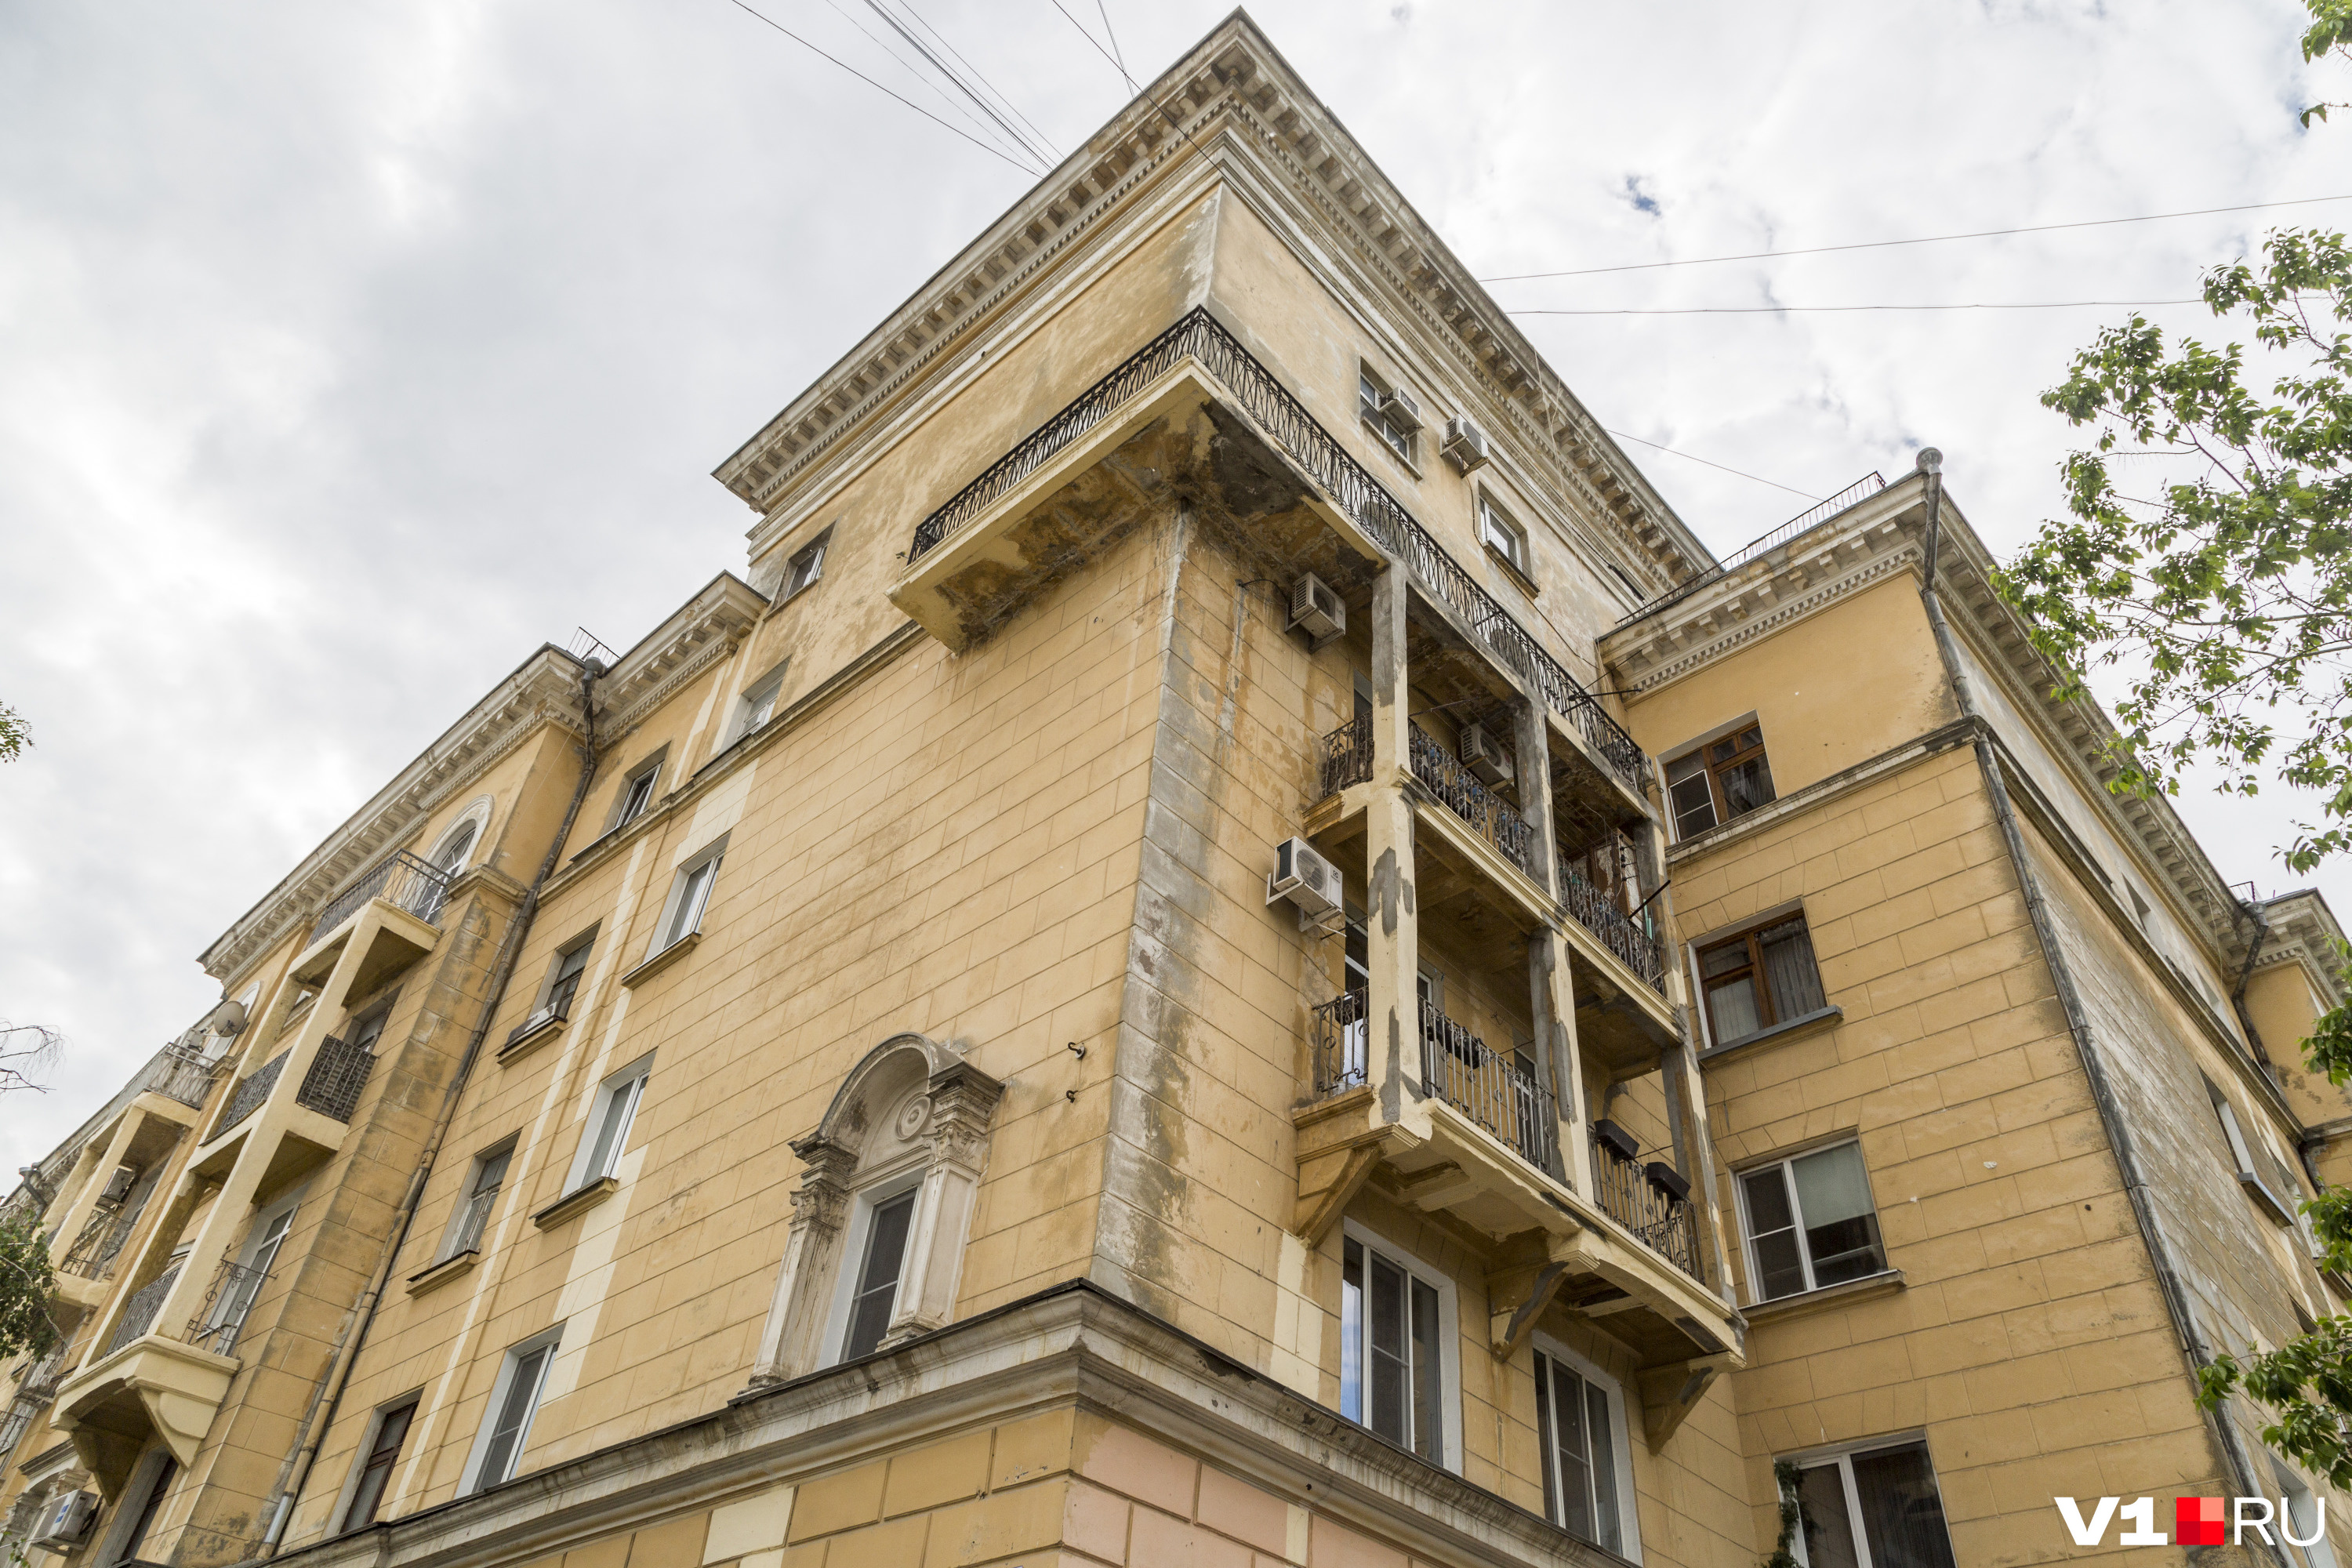 Сталинский ампир улицы нуждается в спешном и качественном ремонте